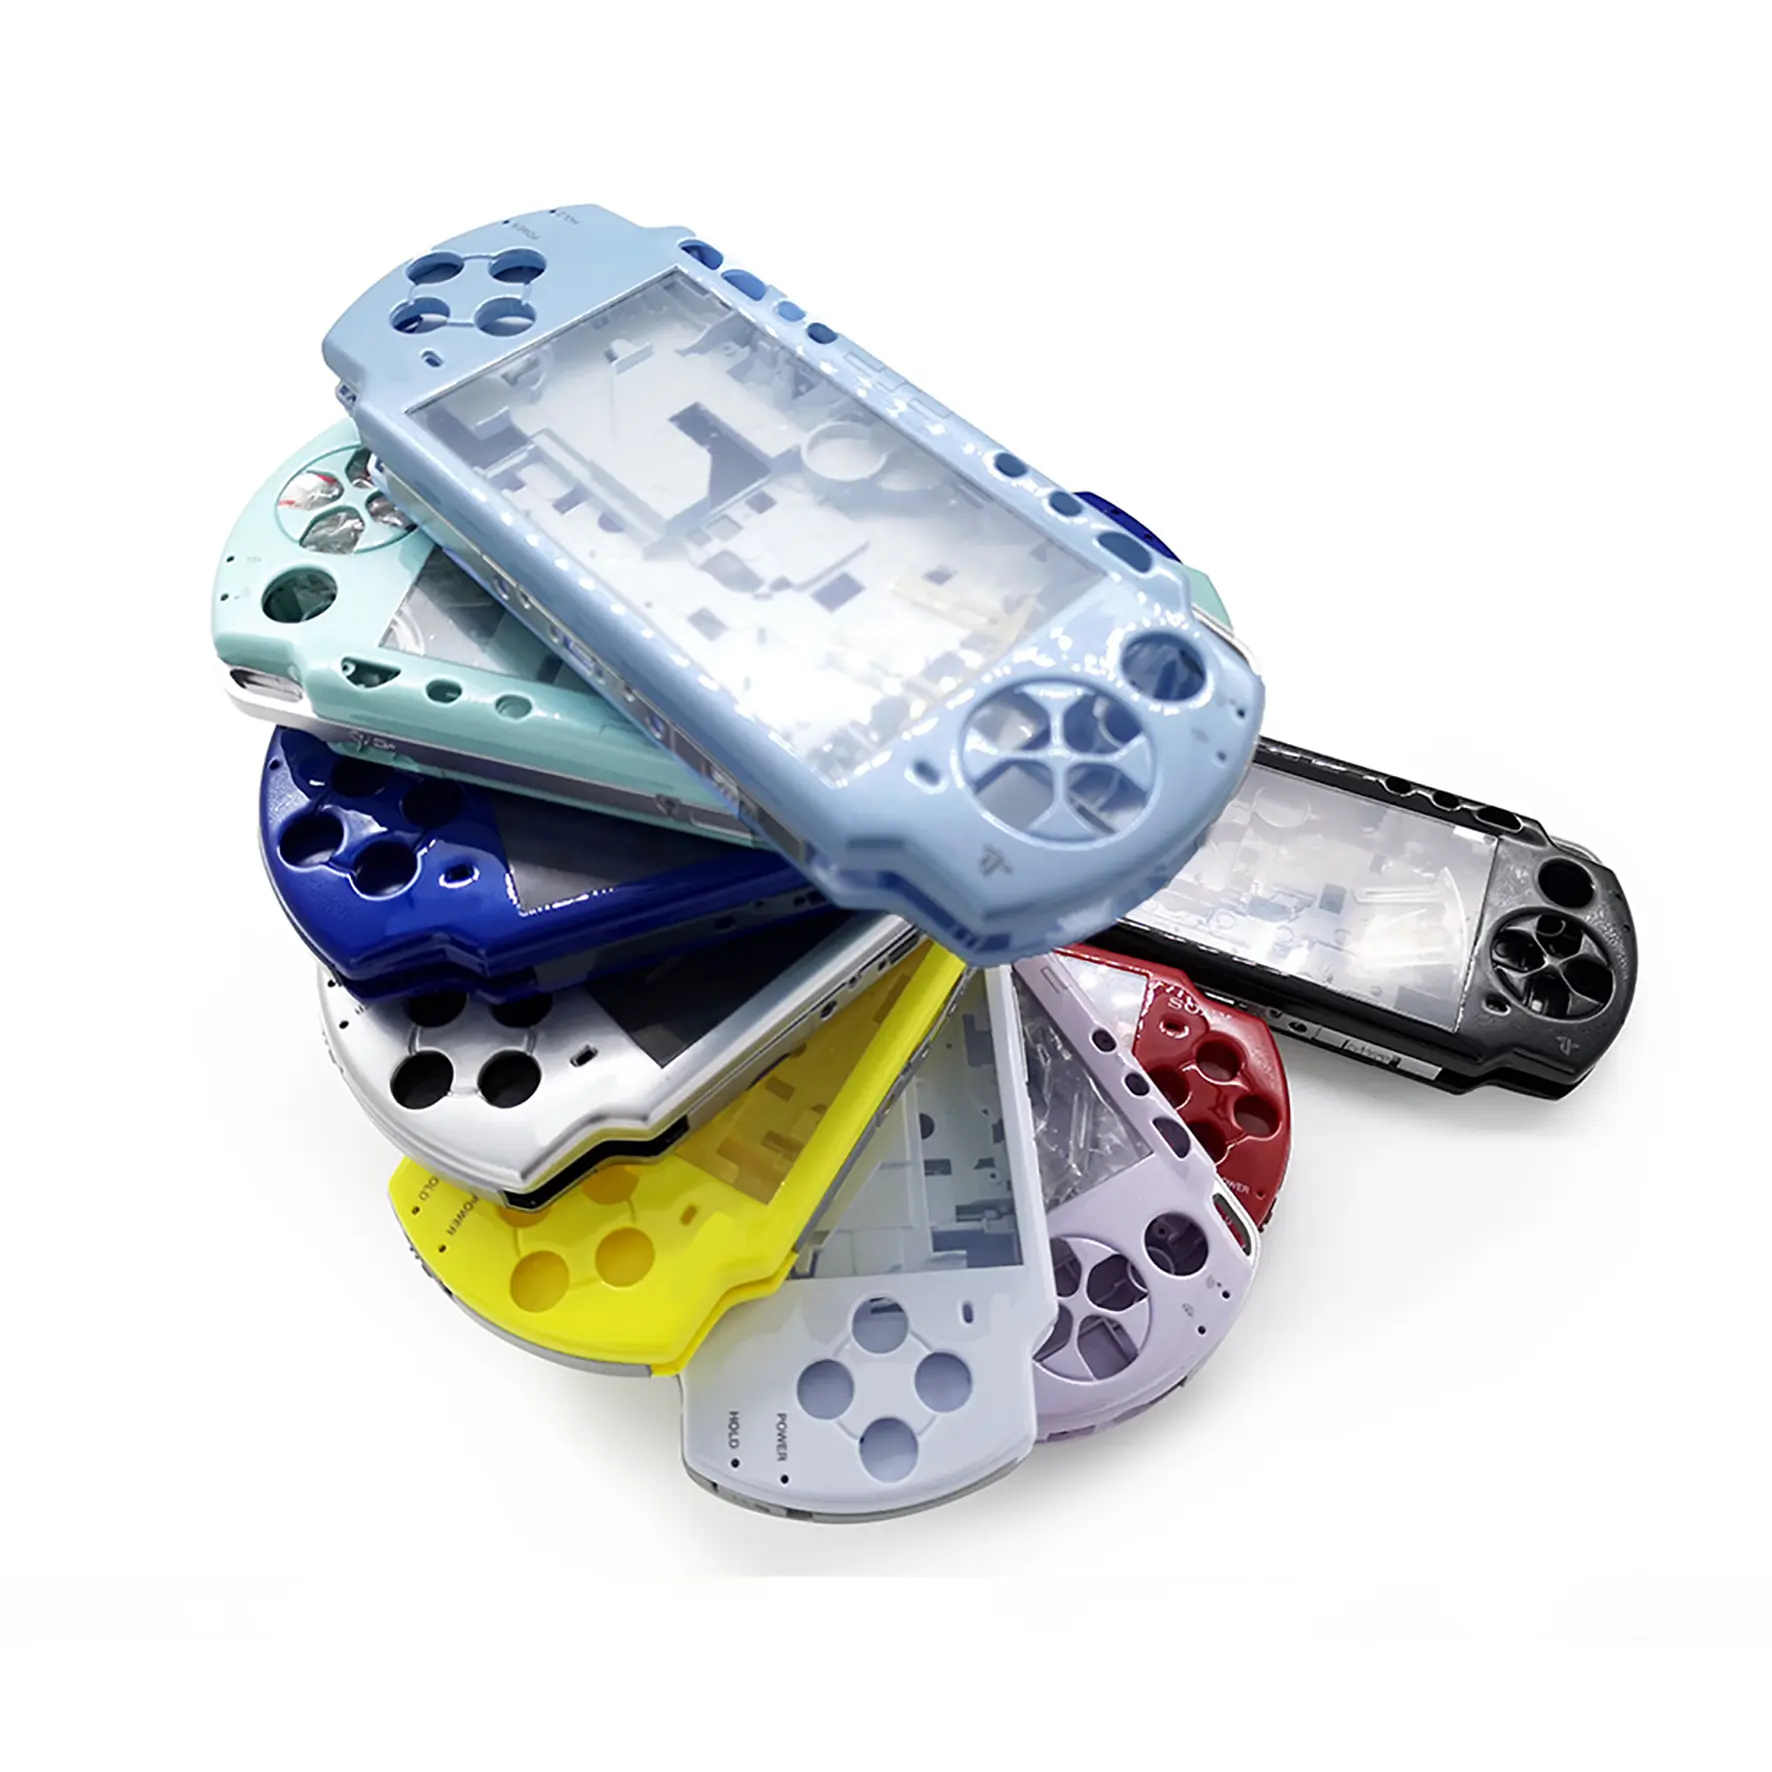 Full Housing Shell Case Cover for PSP1000 With Button Case Shell Housing Cover for PSP 1000 With Buttons Kit Case Shell